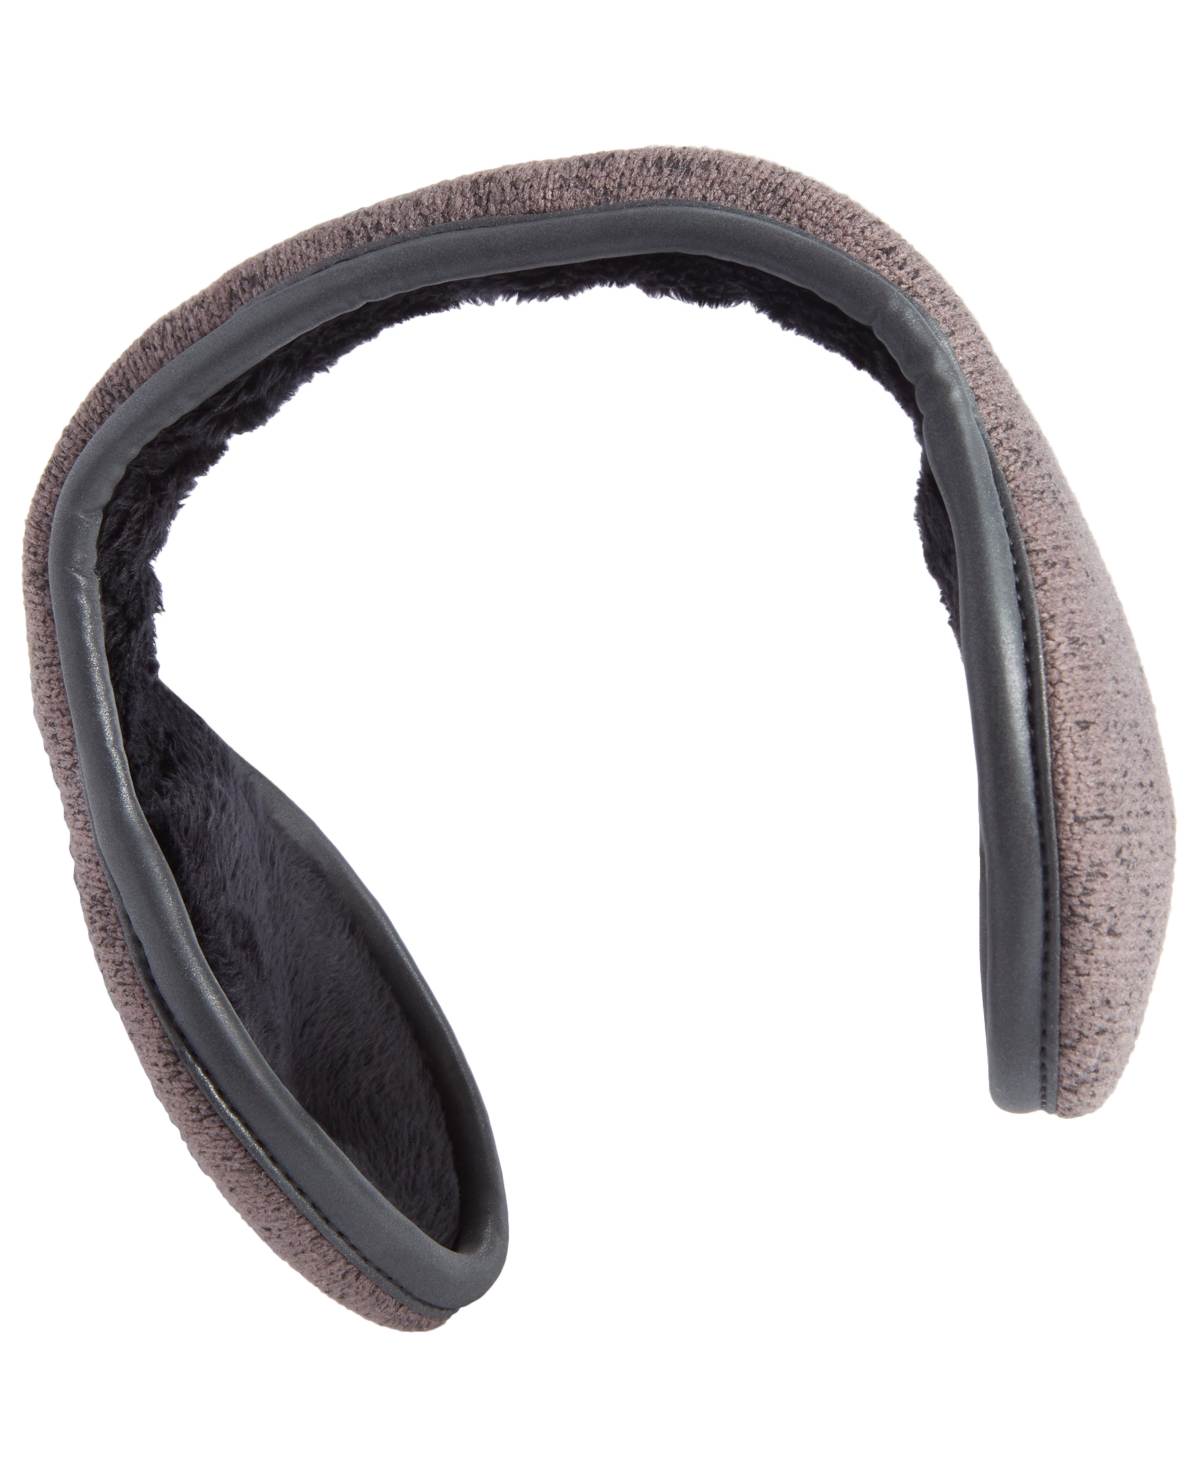 Men's Sweater-Knit Ear Warmers - Grey Multi